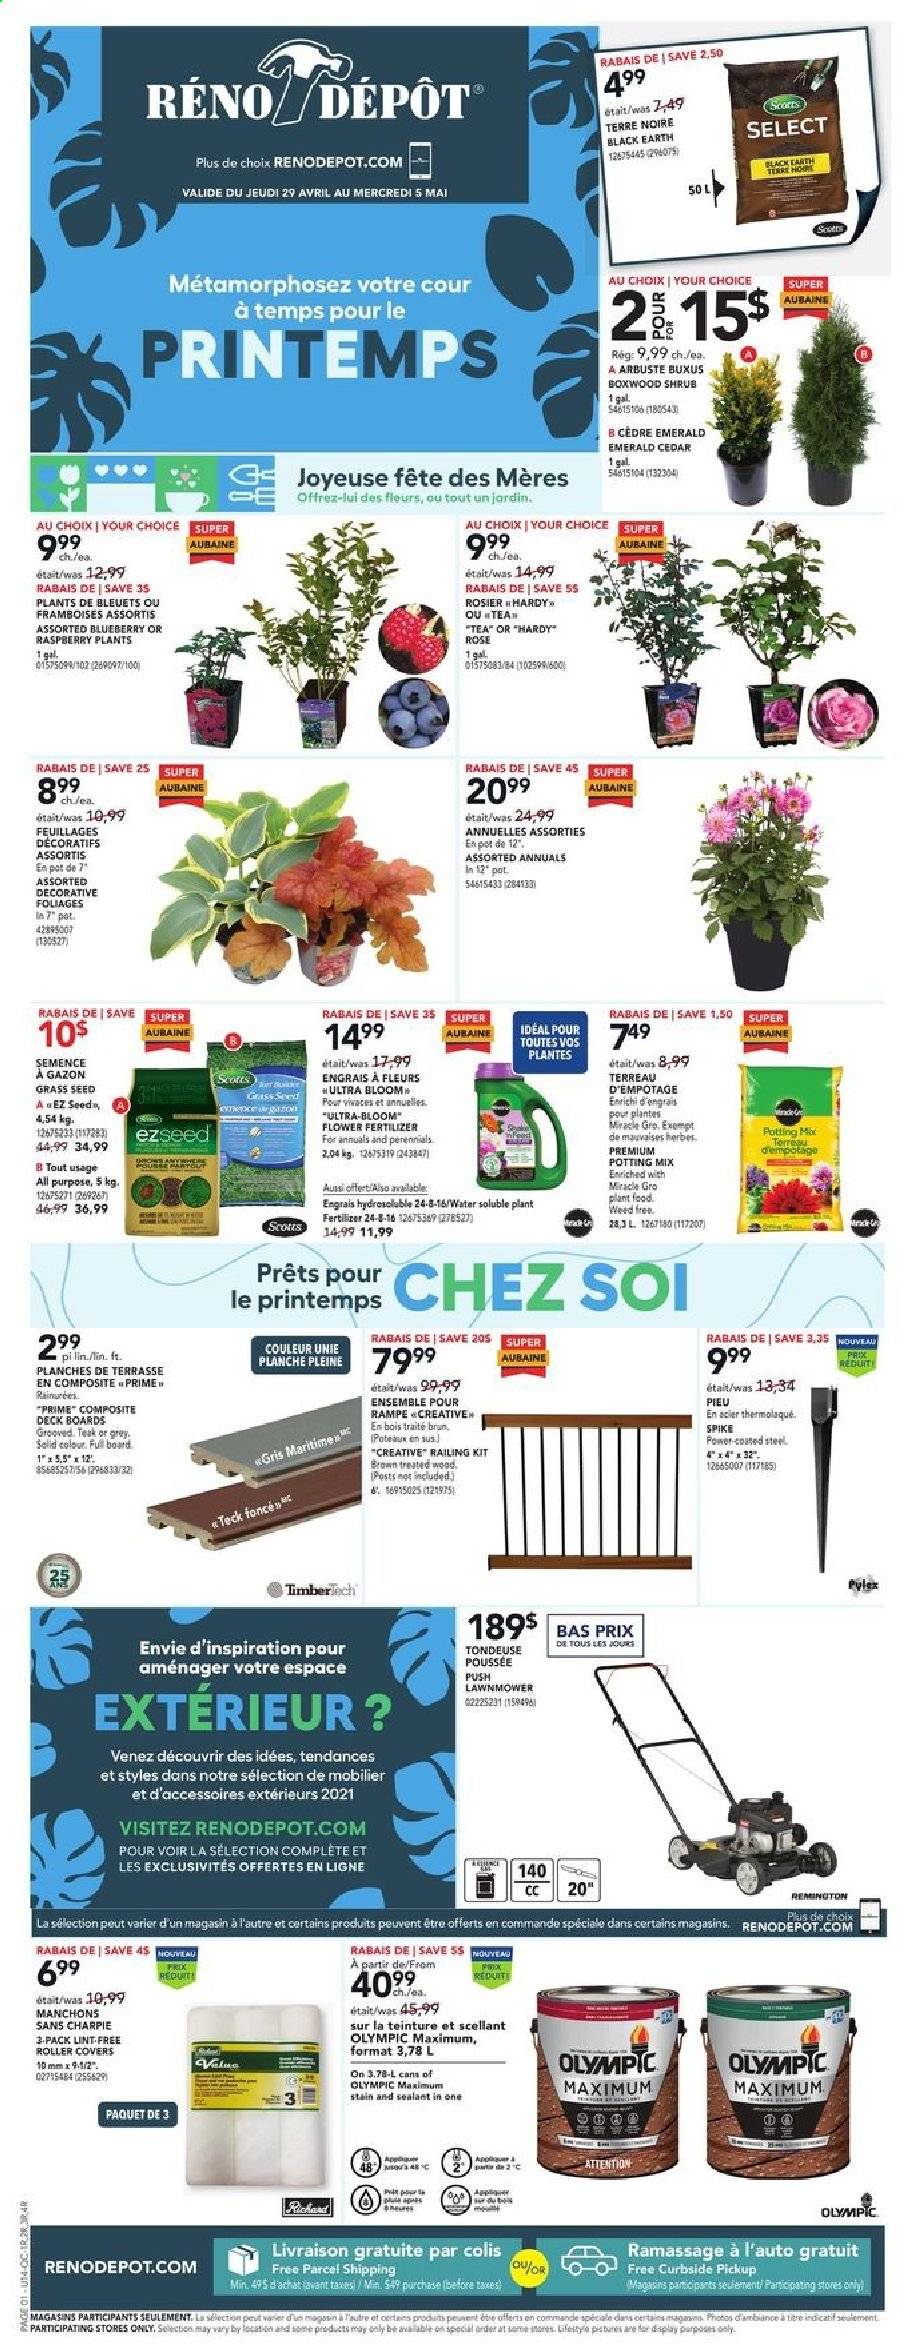 thumbnail - Réno-Dépôt Flyer - April 29, 2021 - May 05, 2021 - Sales products - roller, Lack, lawn mower, pot, plant seeds, rose, potting mix, fertilizer, grass seed, Remington. Page 1.